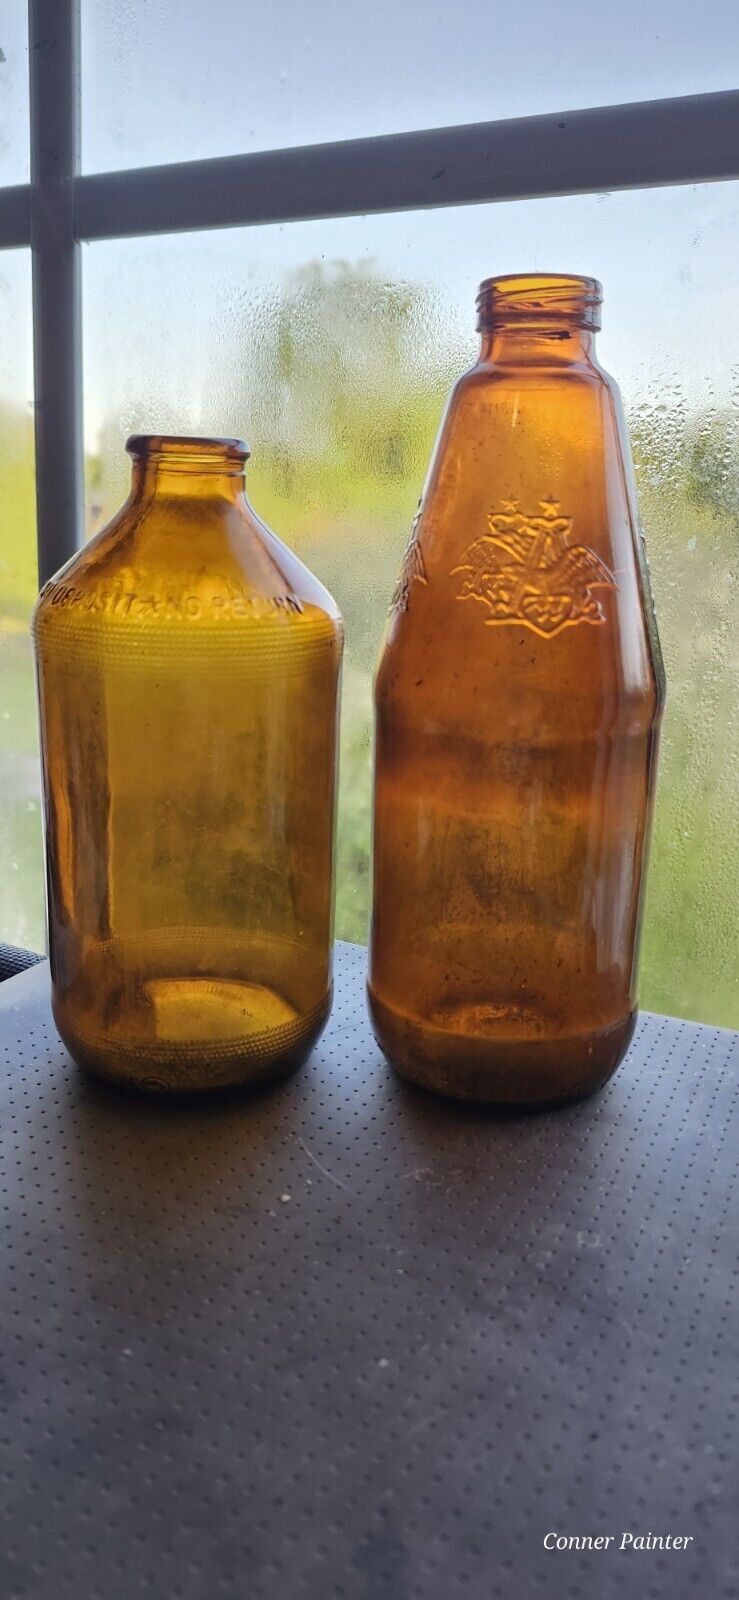 2 Antique Brown Beer Bottles. 1950s Bottle & Vintage Embossed Amheuser Busch